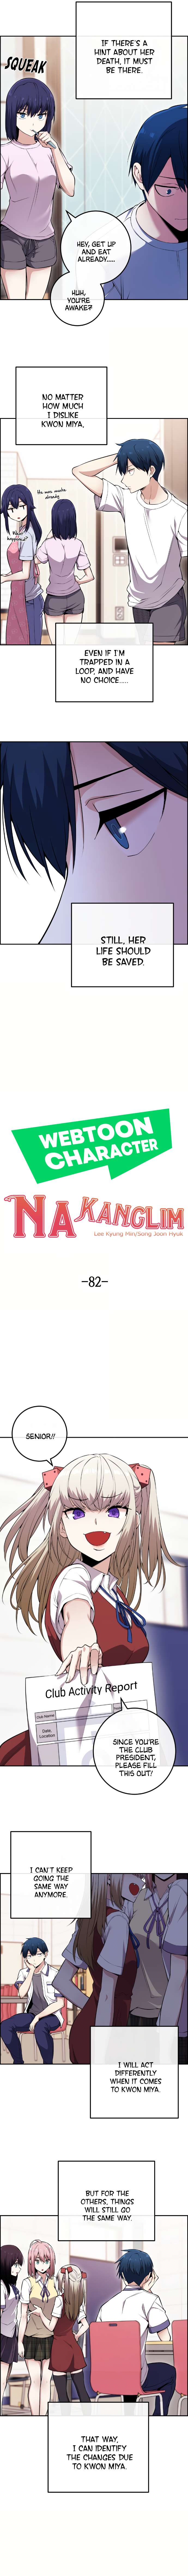 Character Na Kang Lim - chapter 82 - #4